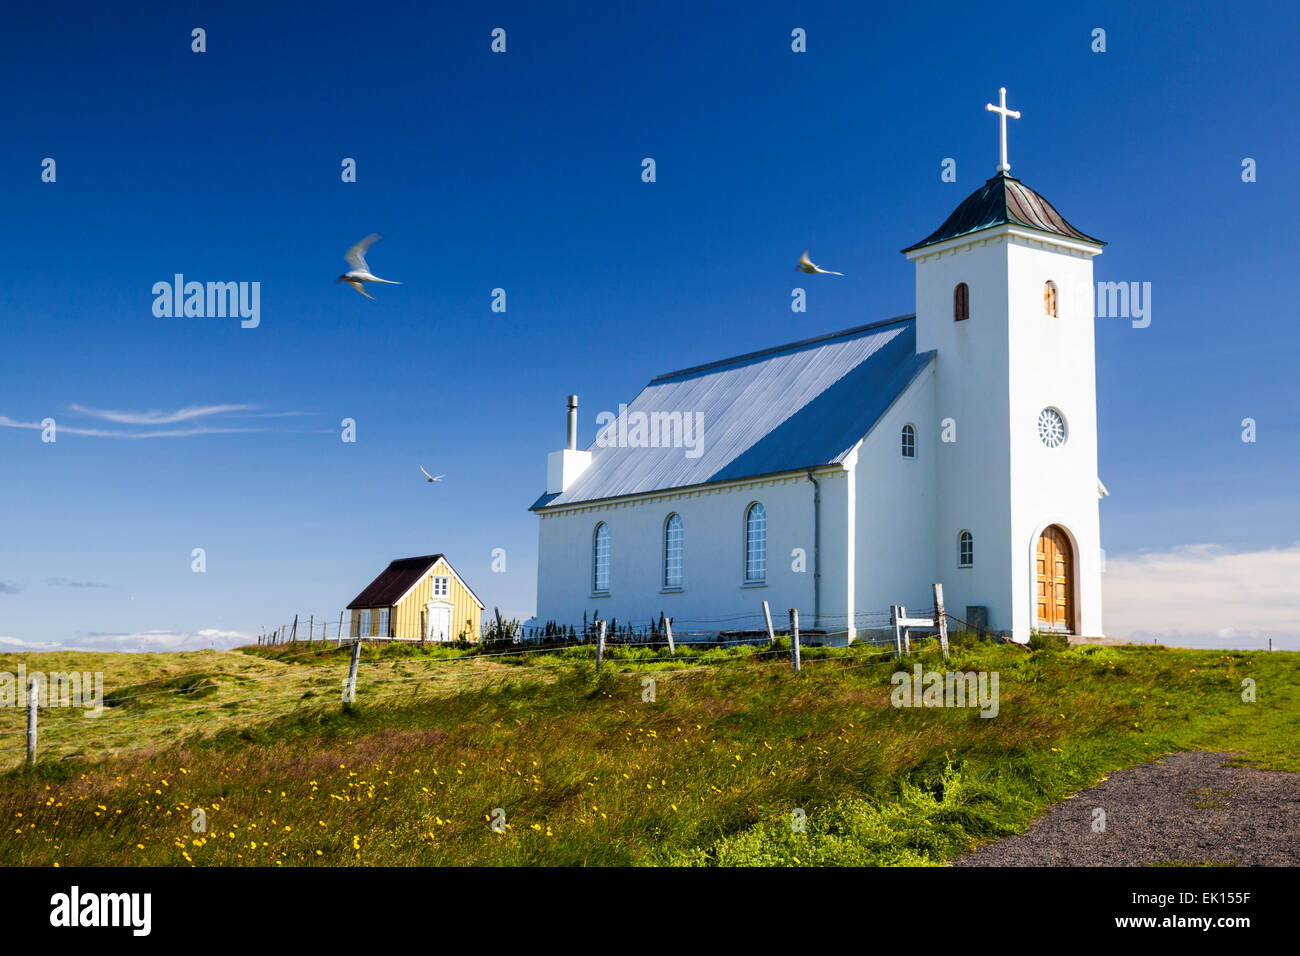 Chiesa terna immagini e fotografie stock ad alta risoluzione - Alamy